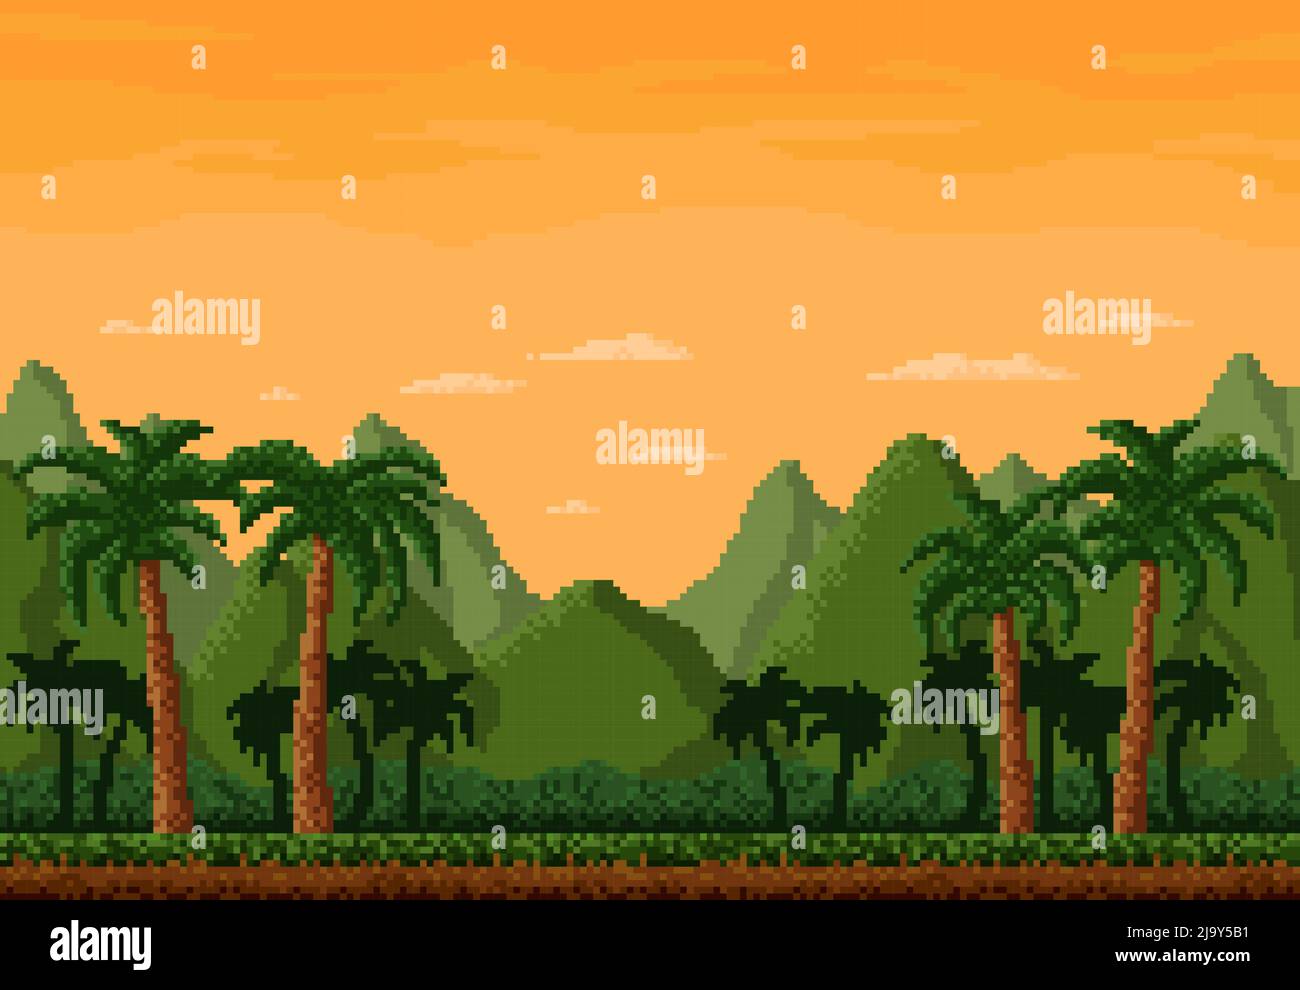 Rừng pixel 8 bit - Hãy thử tưởng tượng một khu rừng hoang dã được thiết kế bằng những điểm ảnh 8 bit và pixel đầy sắc màu. Bạn sẽ cảm thấy mình như đang đi vào một thế giới khác, kỳ lạ nhưng đầy hoài niệm. Hãy tải xuống hình ảnh về rừng pixel 8 bit này và cảm nhận vẻ đẹp độc đáo của nó.